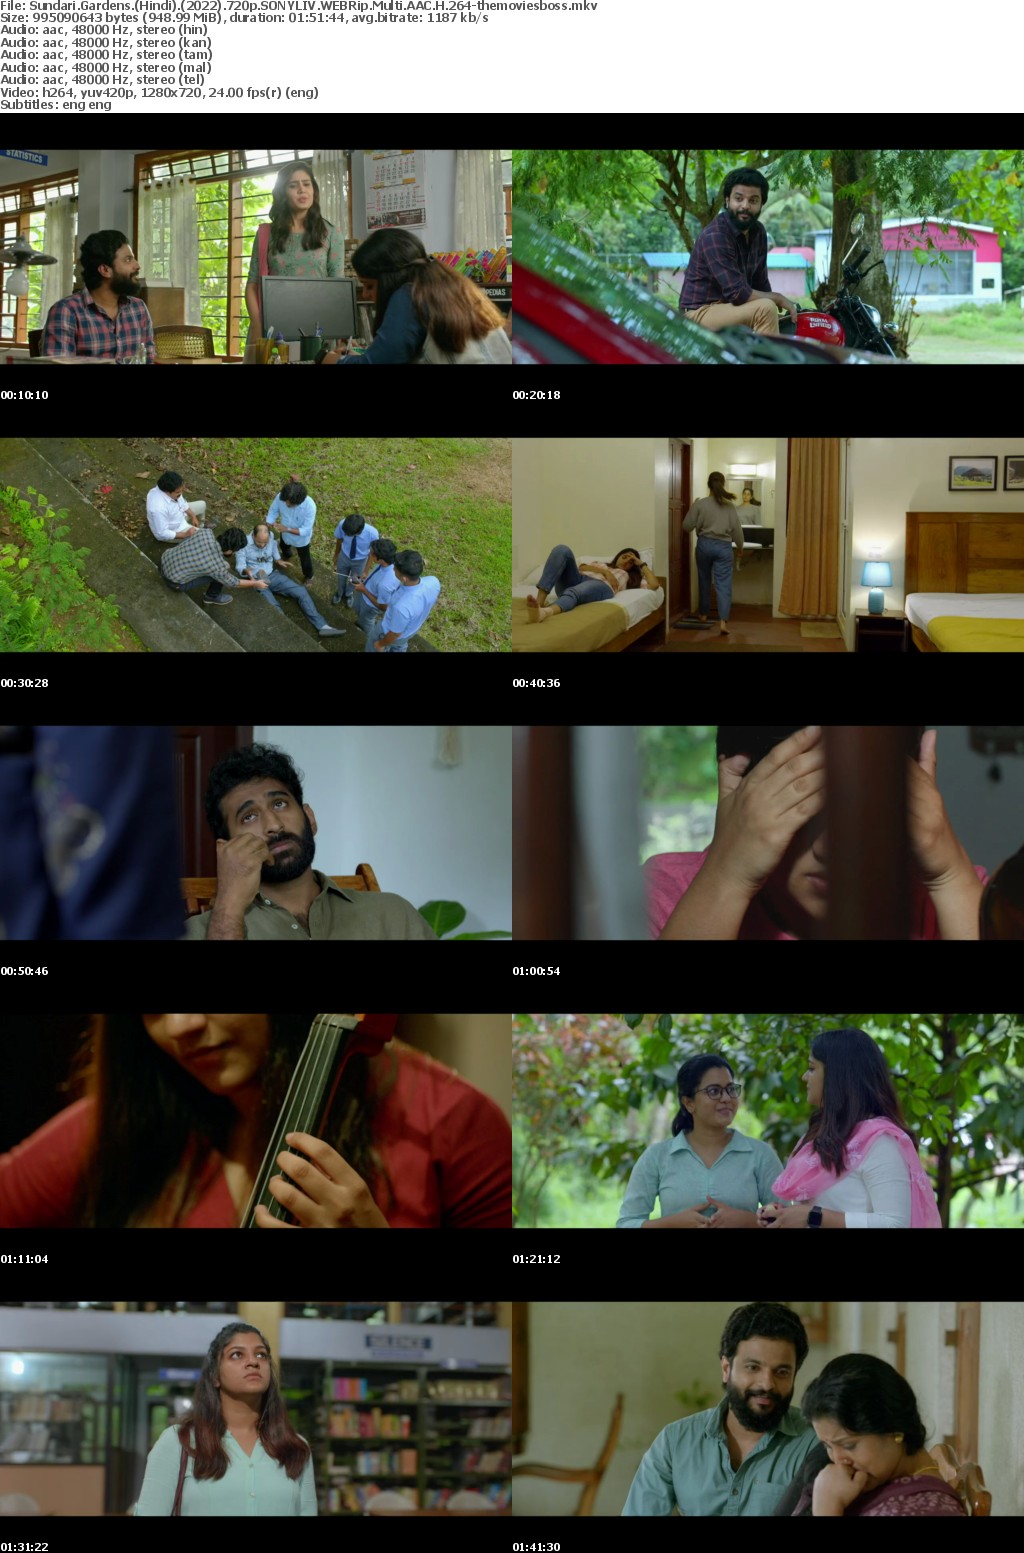 Sundari Gardens (Hindi) (2022) 720p SONYLIV WEBRip Multi AAC H 264-themoviesboss